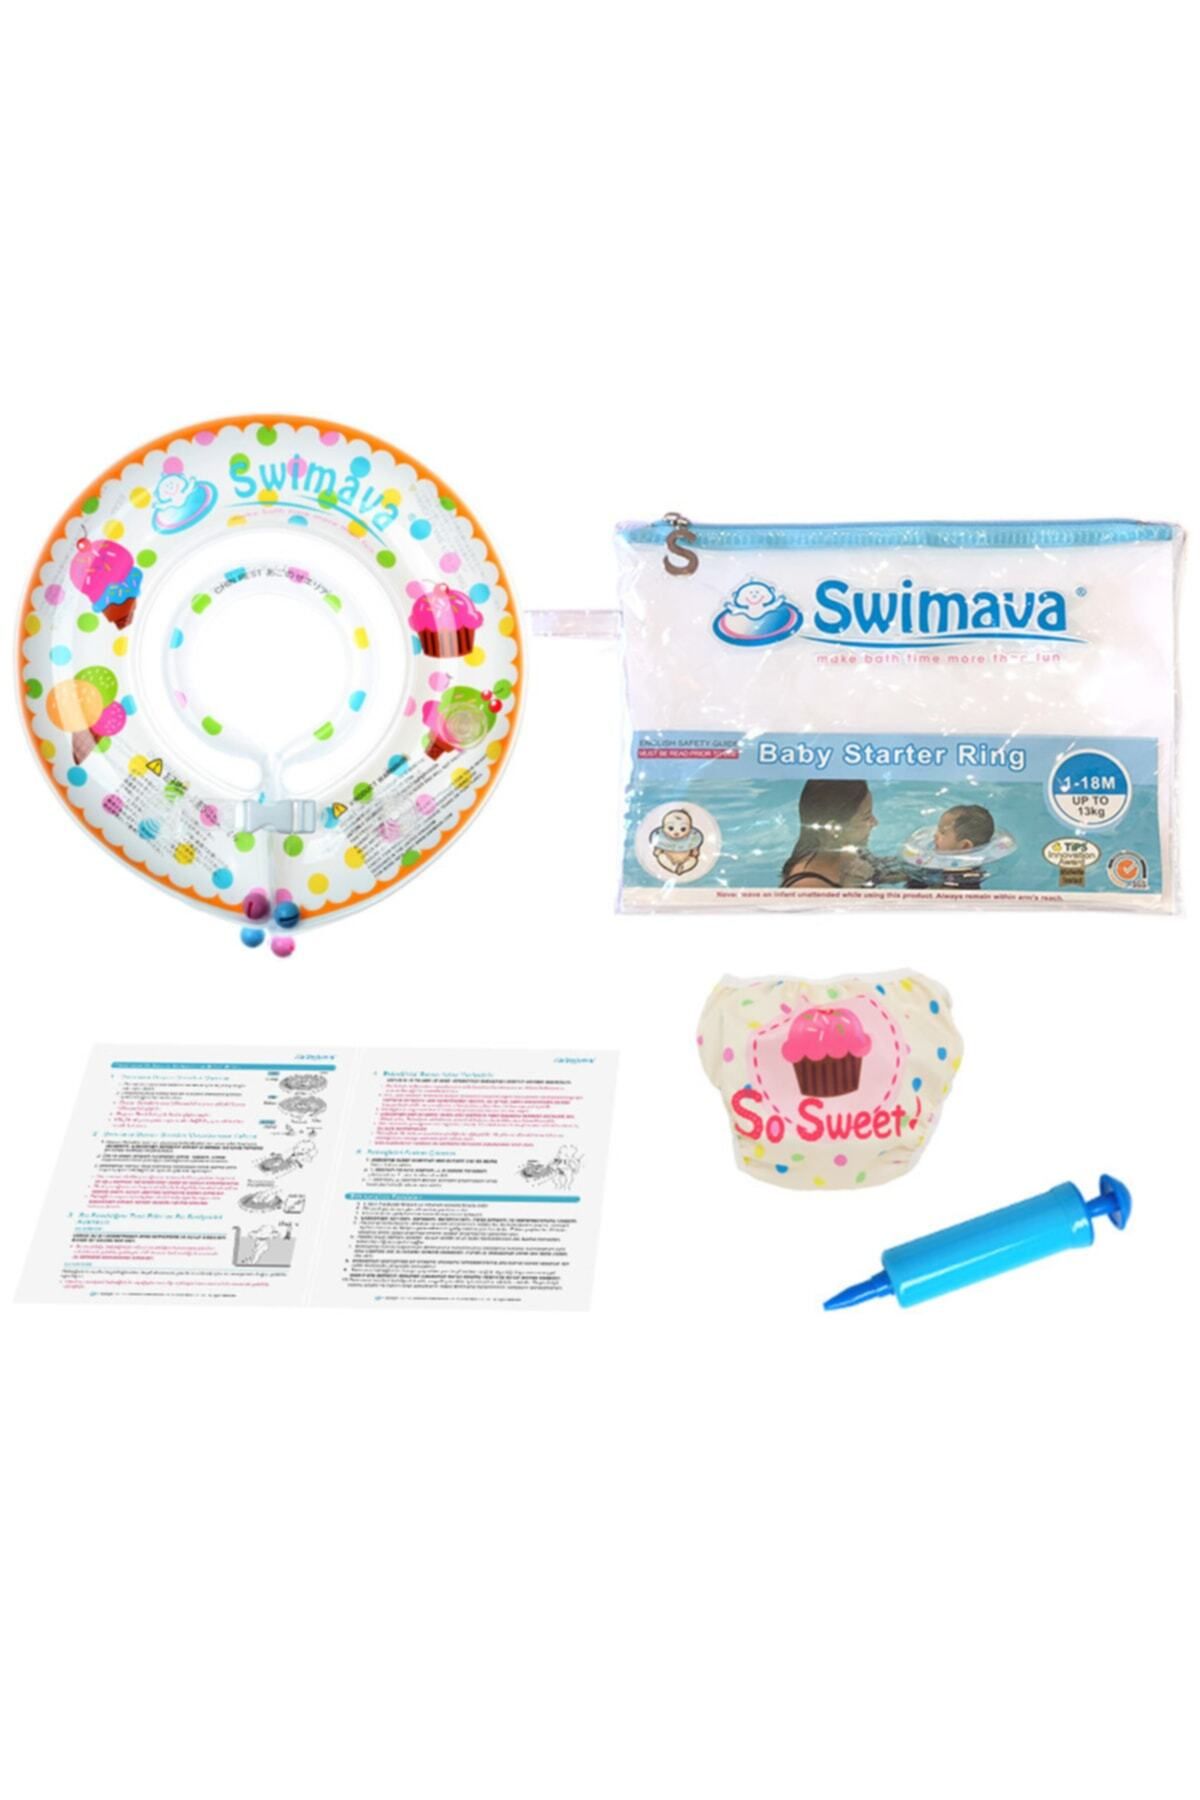 Swimava Dondurma Set